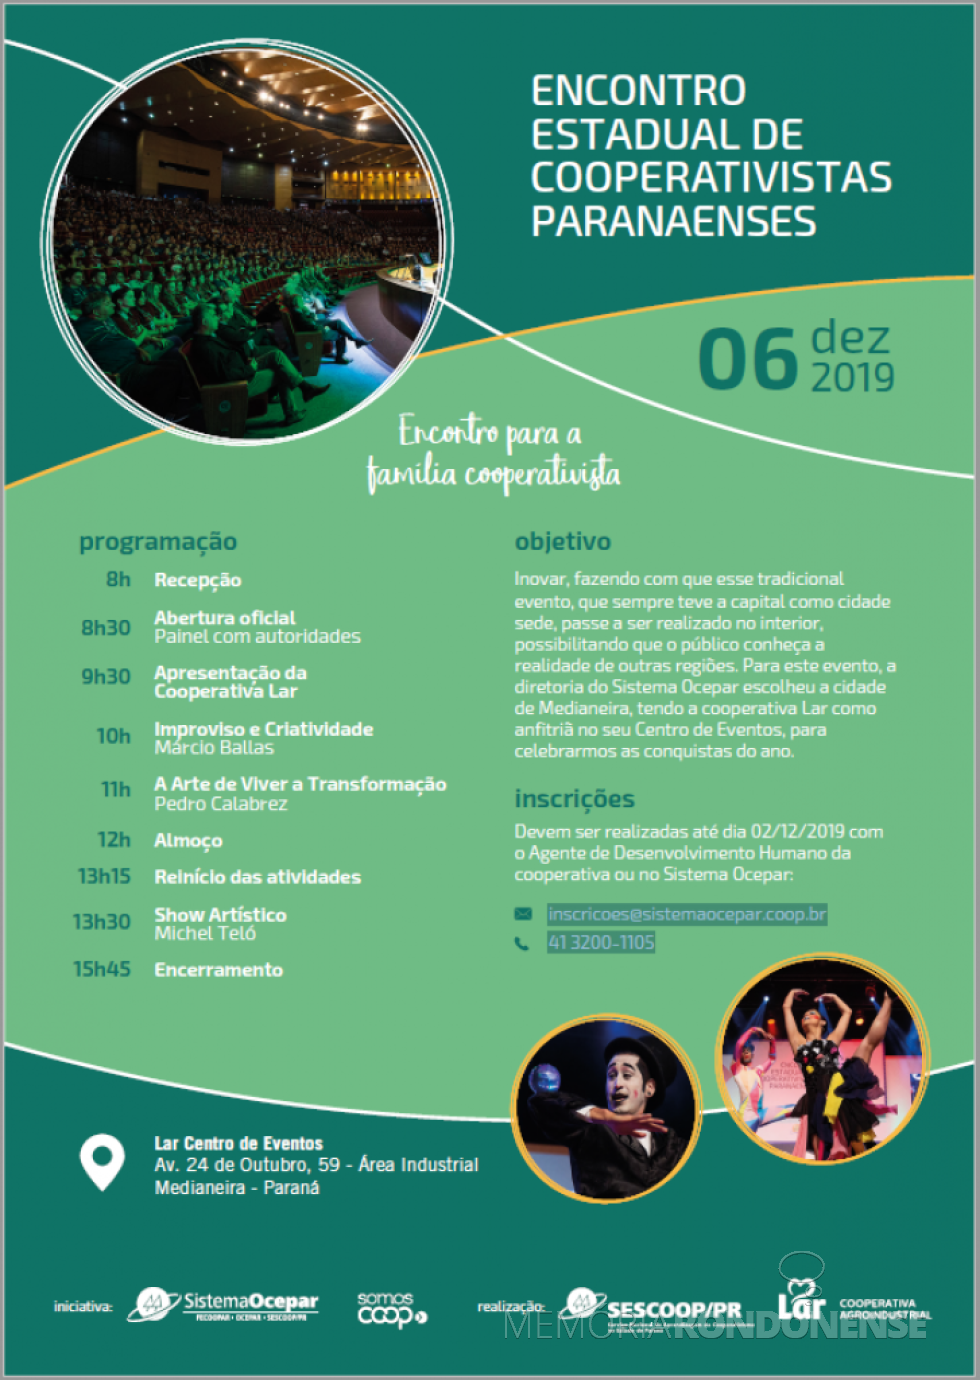 || Banner-convite para o Encontro Estadual de Cooperativas Paranaenses 2019.
Imagem: Acervo Ocepar - FOTO 20 - 